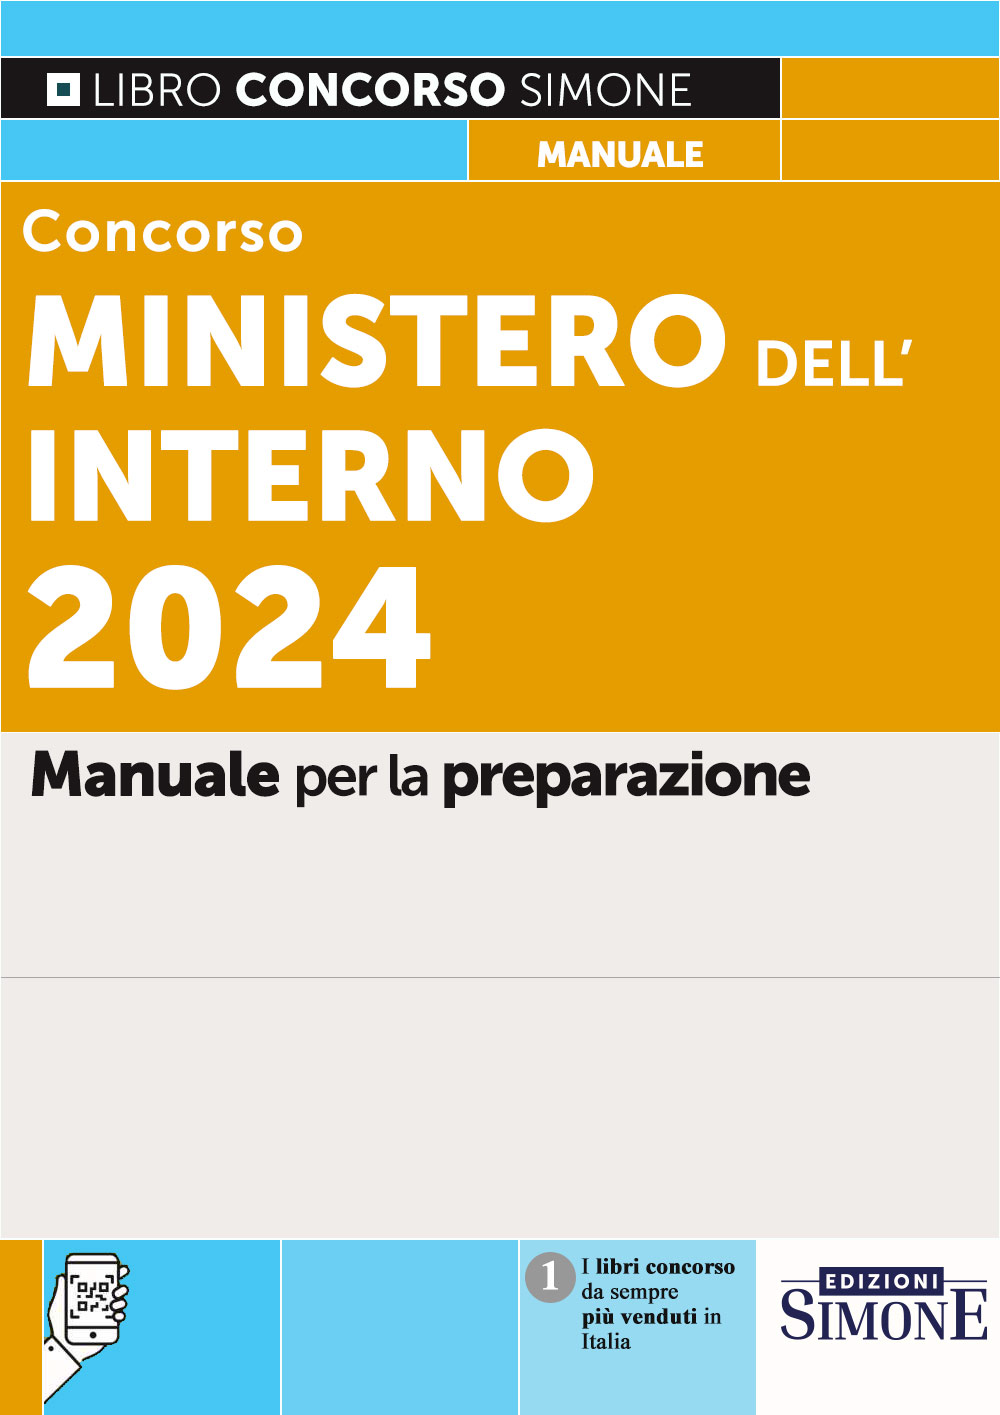 Concorso Ministero dell'Interno 2024 - Simone Concorsi